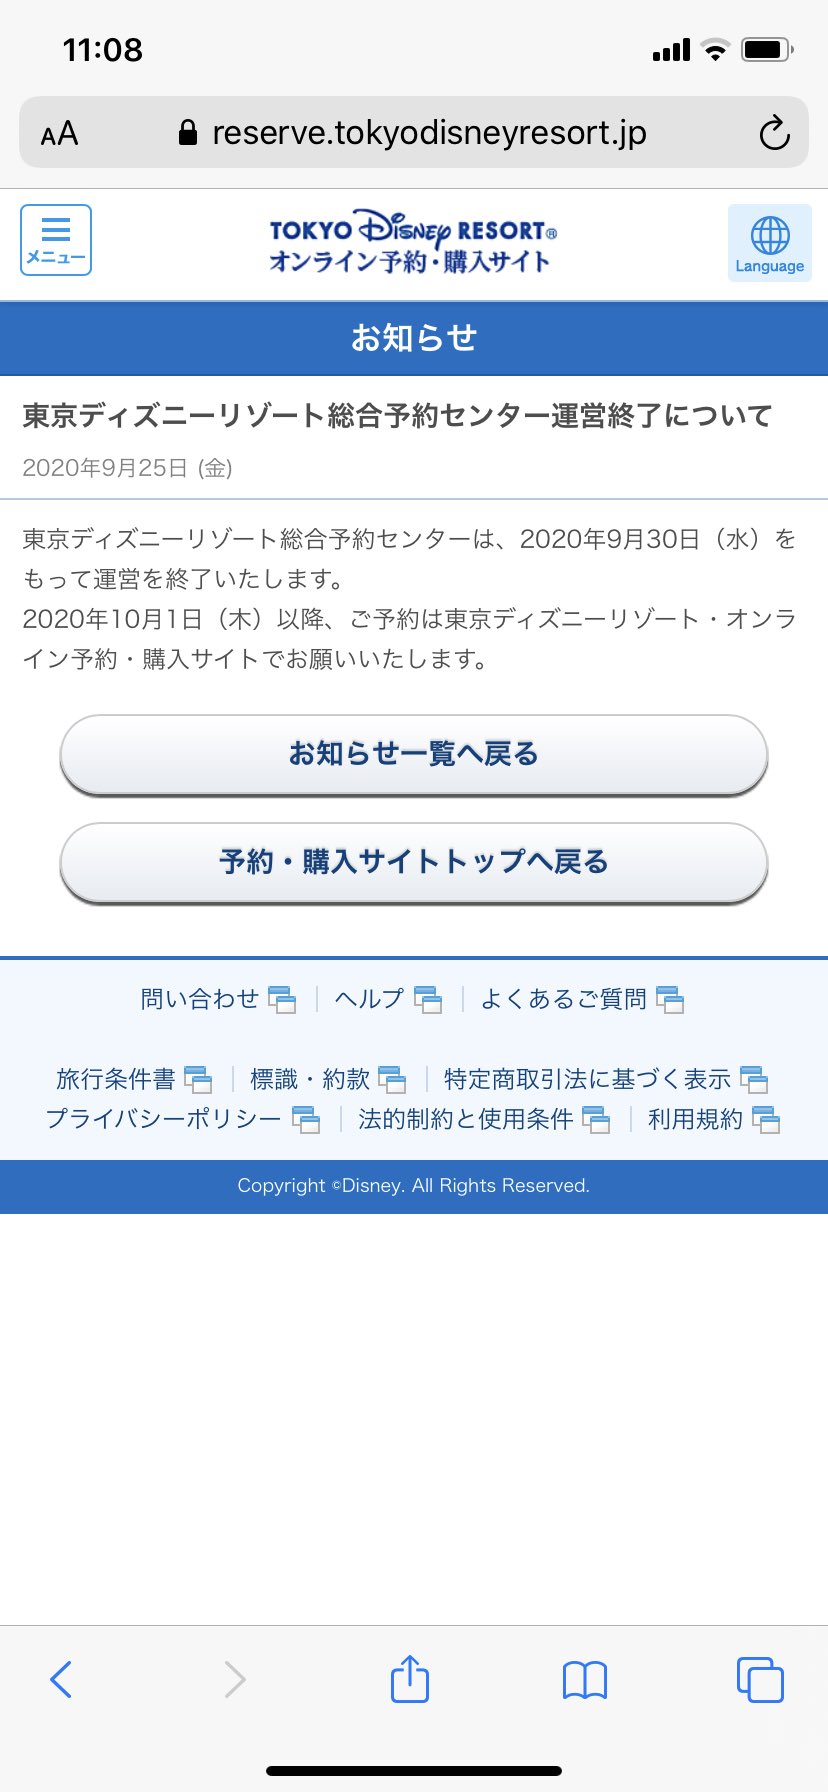 シン ゆー D23ejラス日最高でした 東京ディズニーリゾート総合予約センター は 年9月30日 水 をもって運営を終了いたします 年10月1日 木 以降 ご予約は東京ディズニーリゾート オンライン予約 購入サイトでお願いいたします